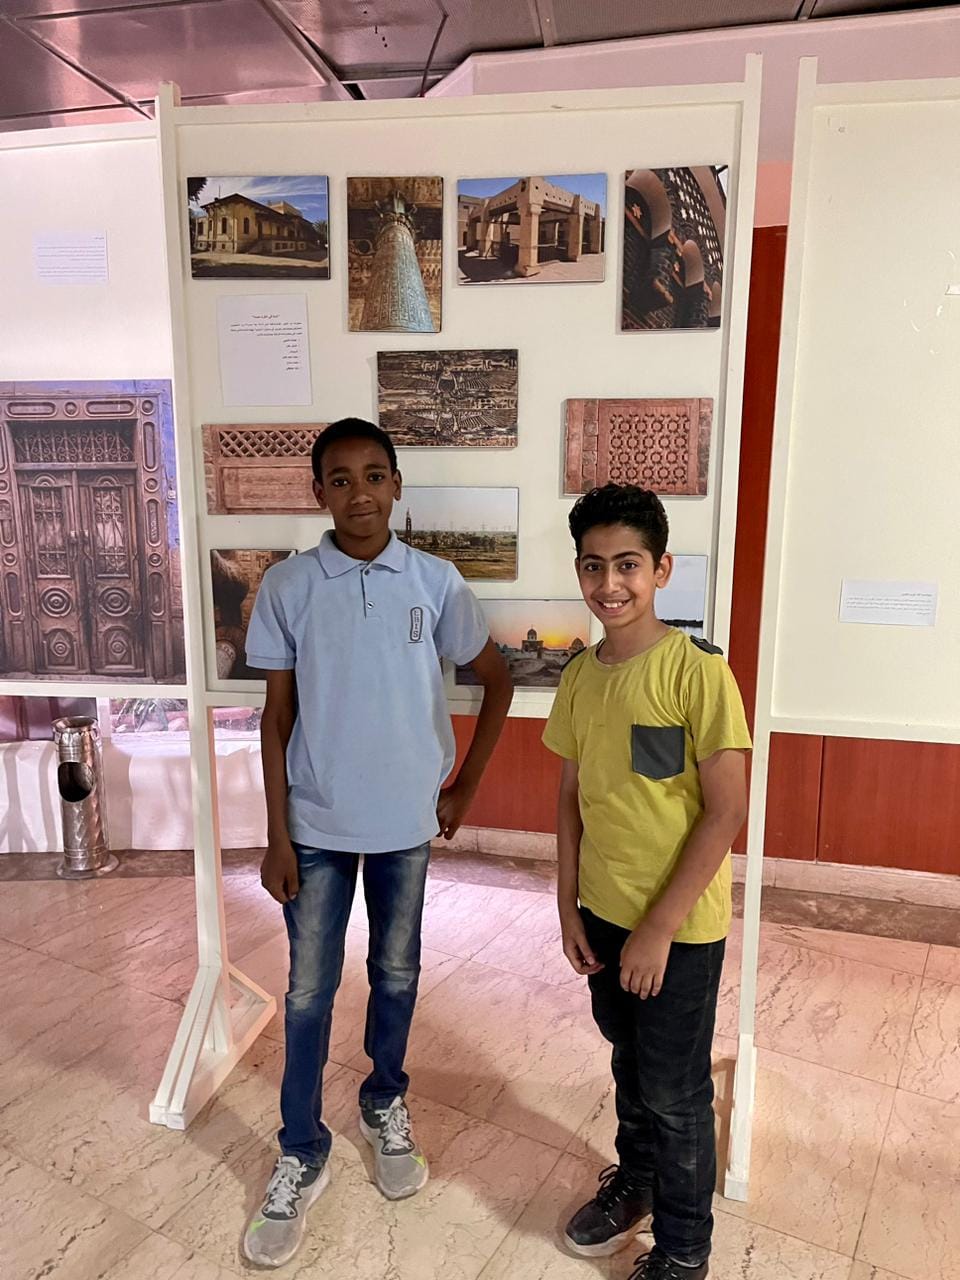 الأطفال خلال زيارة لوحات معرض إسناوى